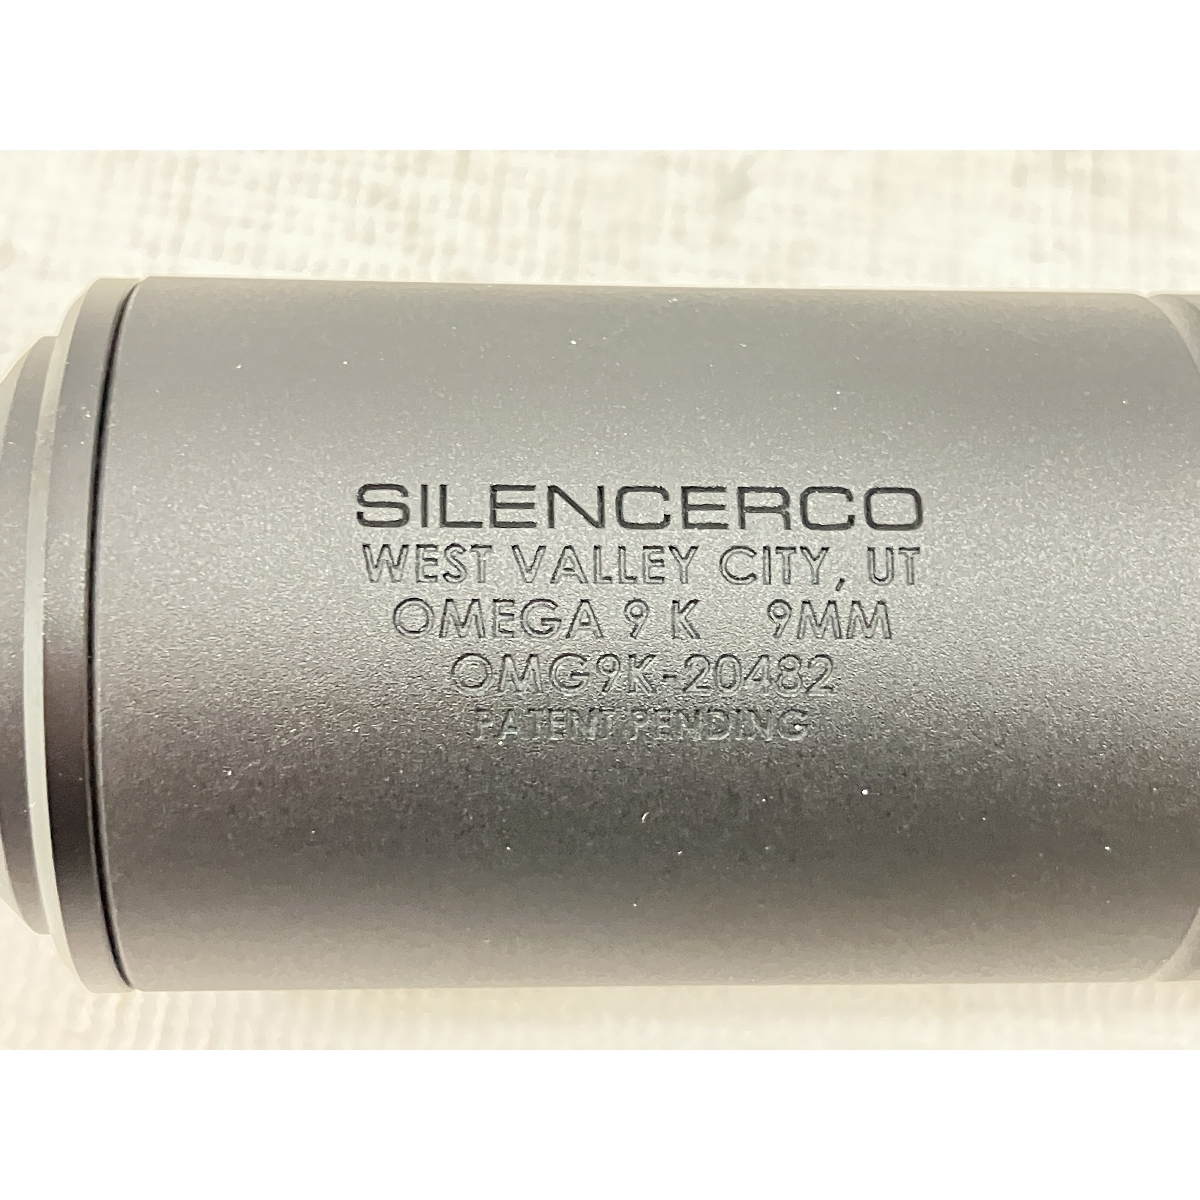 [ гарантия работы ]RGW Silencer M omega 9K модель 9mm муляж глушитель VFC MP5 пневматическое оружие аксессуары милитари б/у H8880184